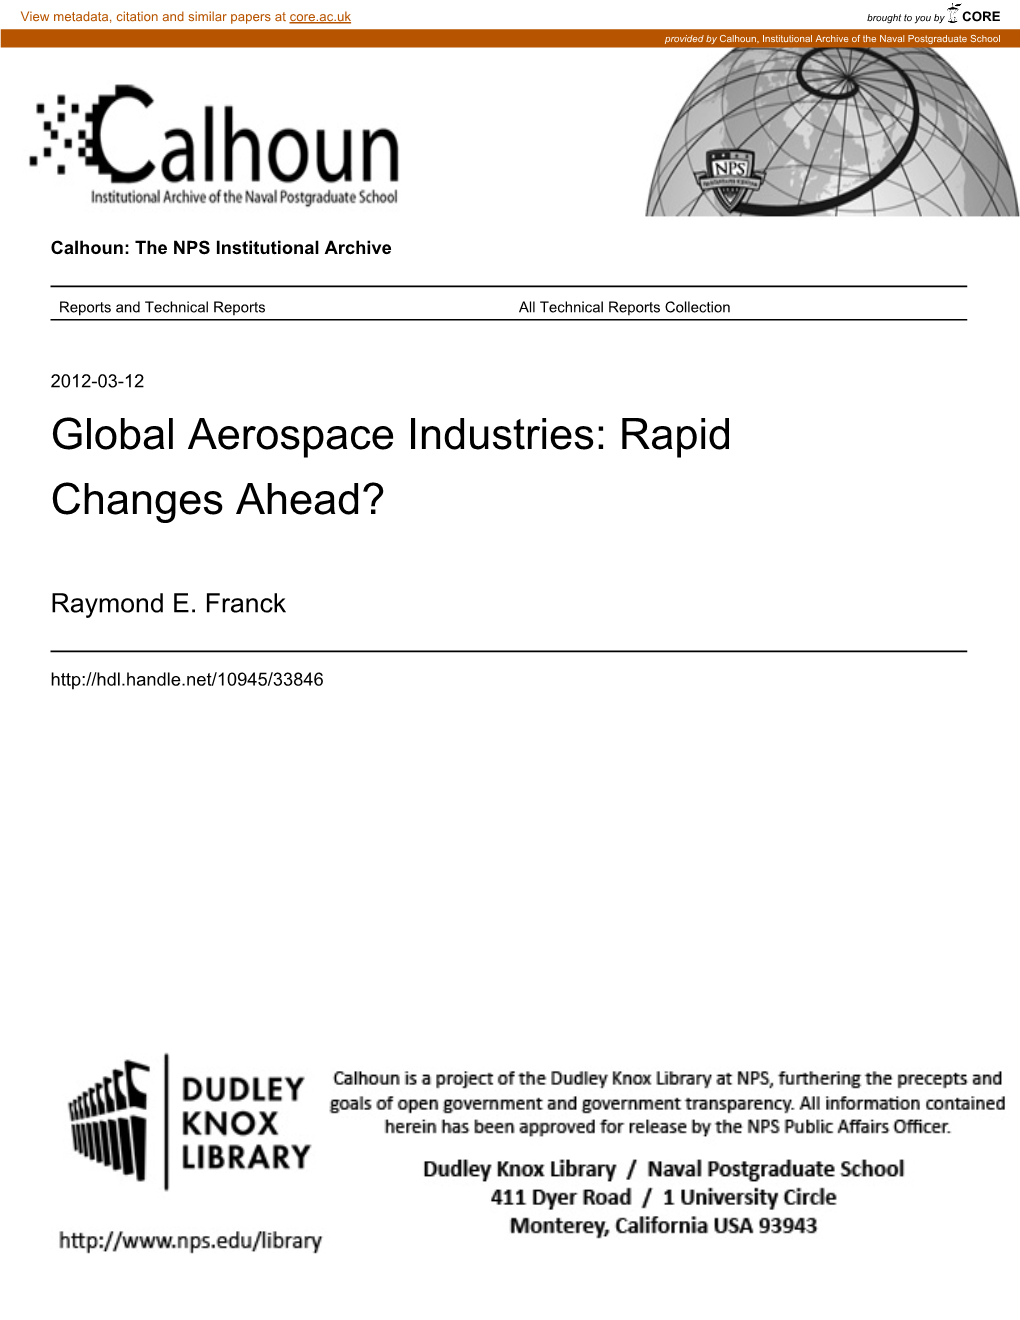 Global Aerospace Industries: Rapid Changes Ahead?